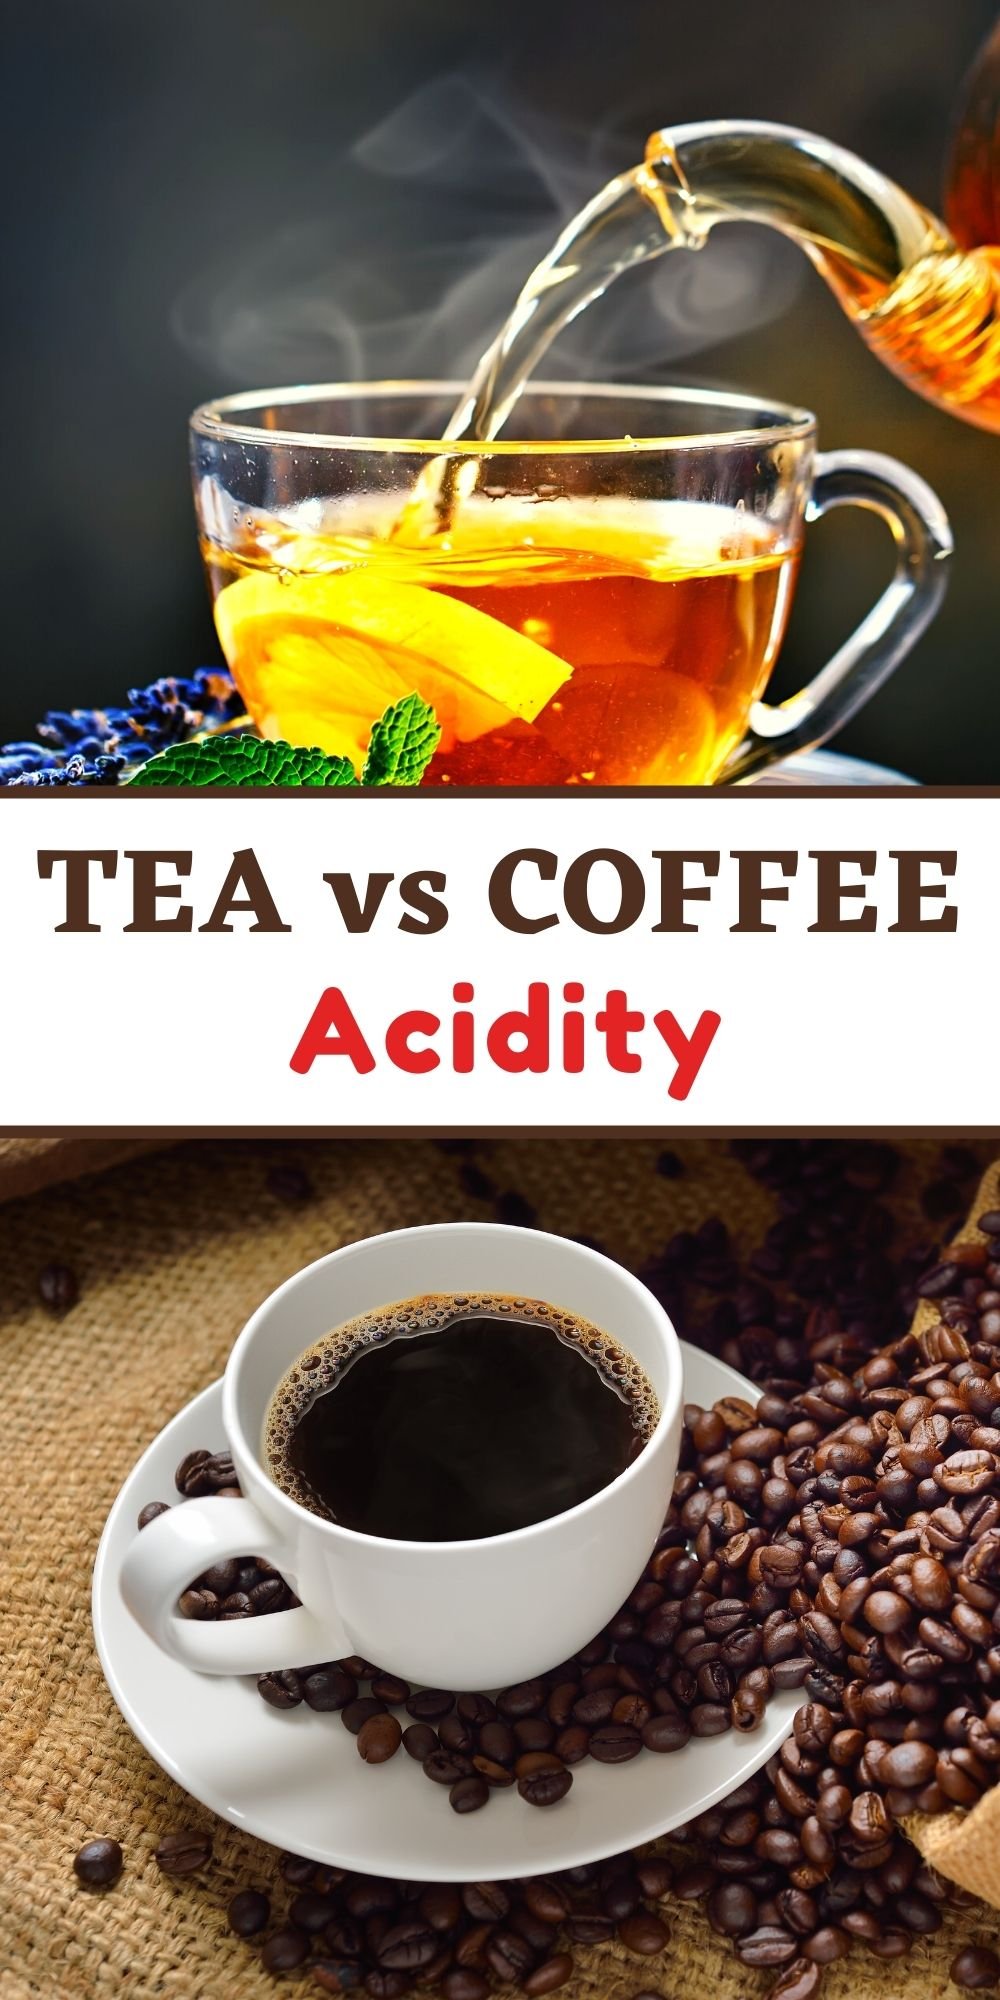 Tea vs Coffee Acidity